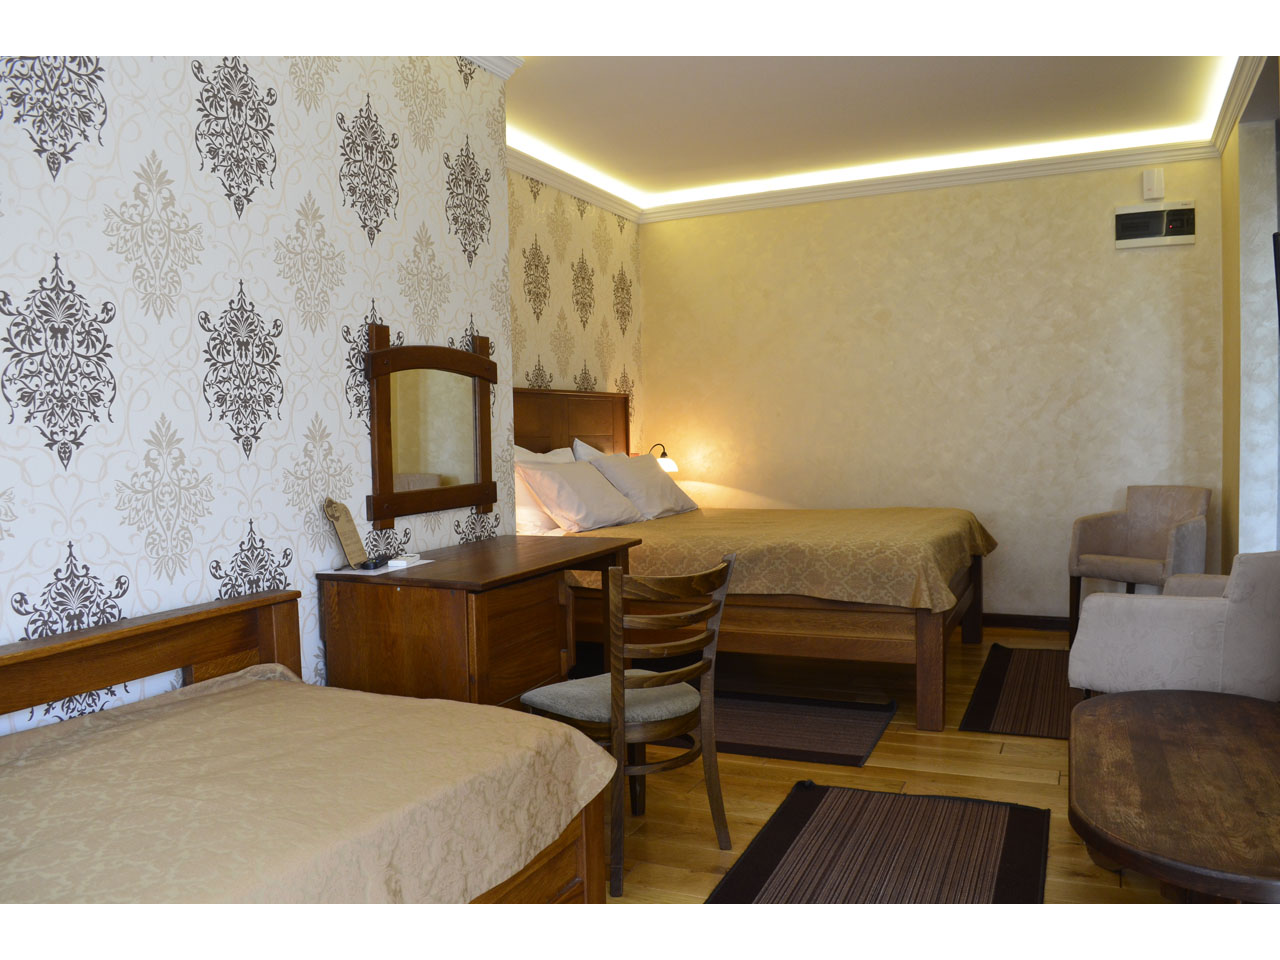 RESTAURANT JOVANJE Motels Beograd